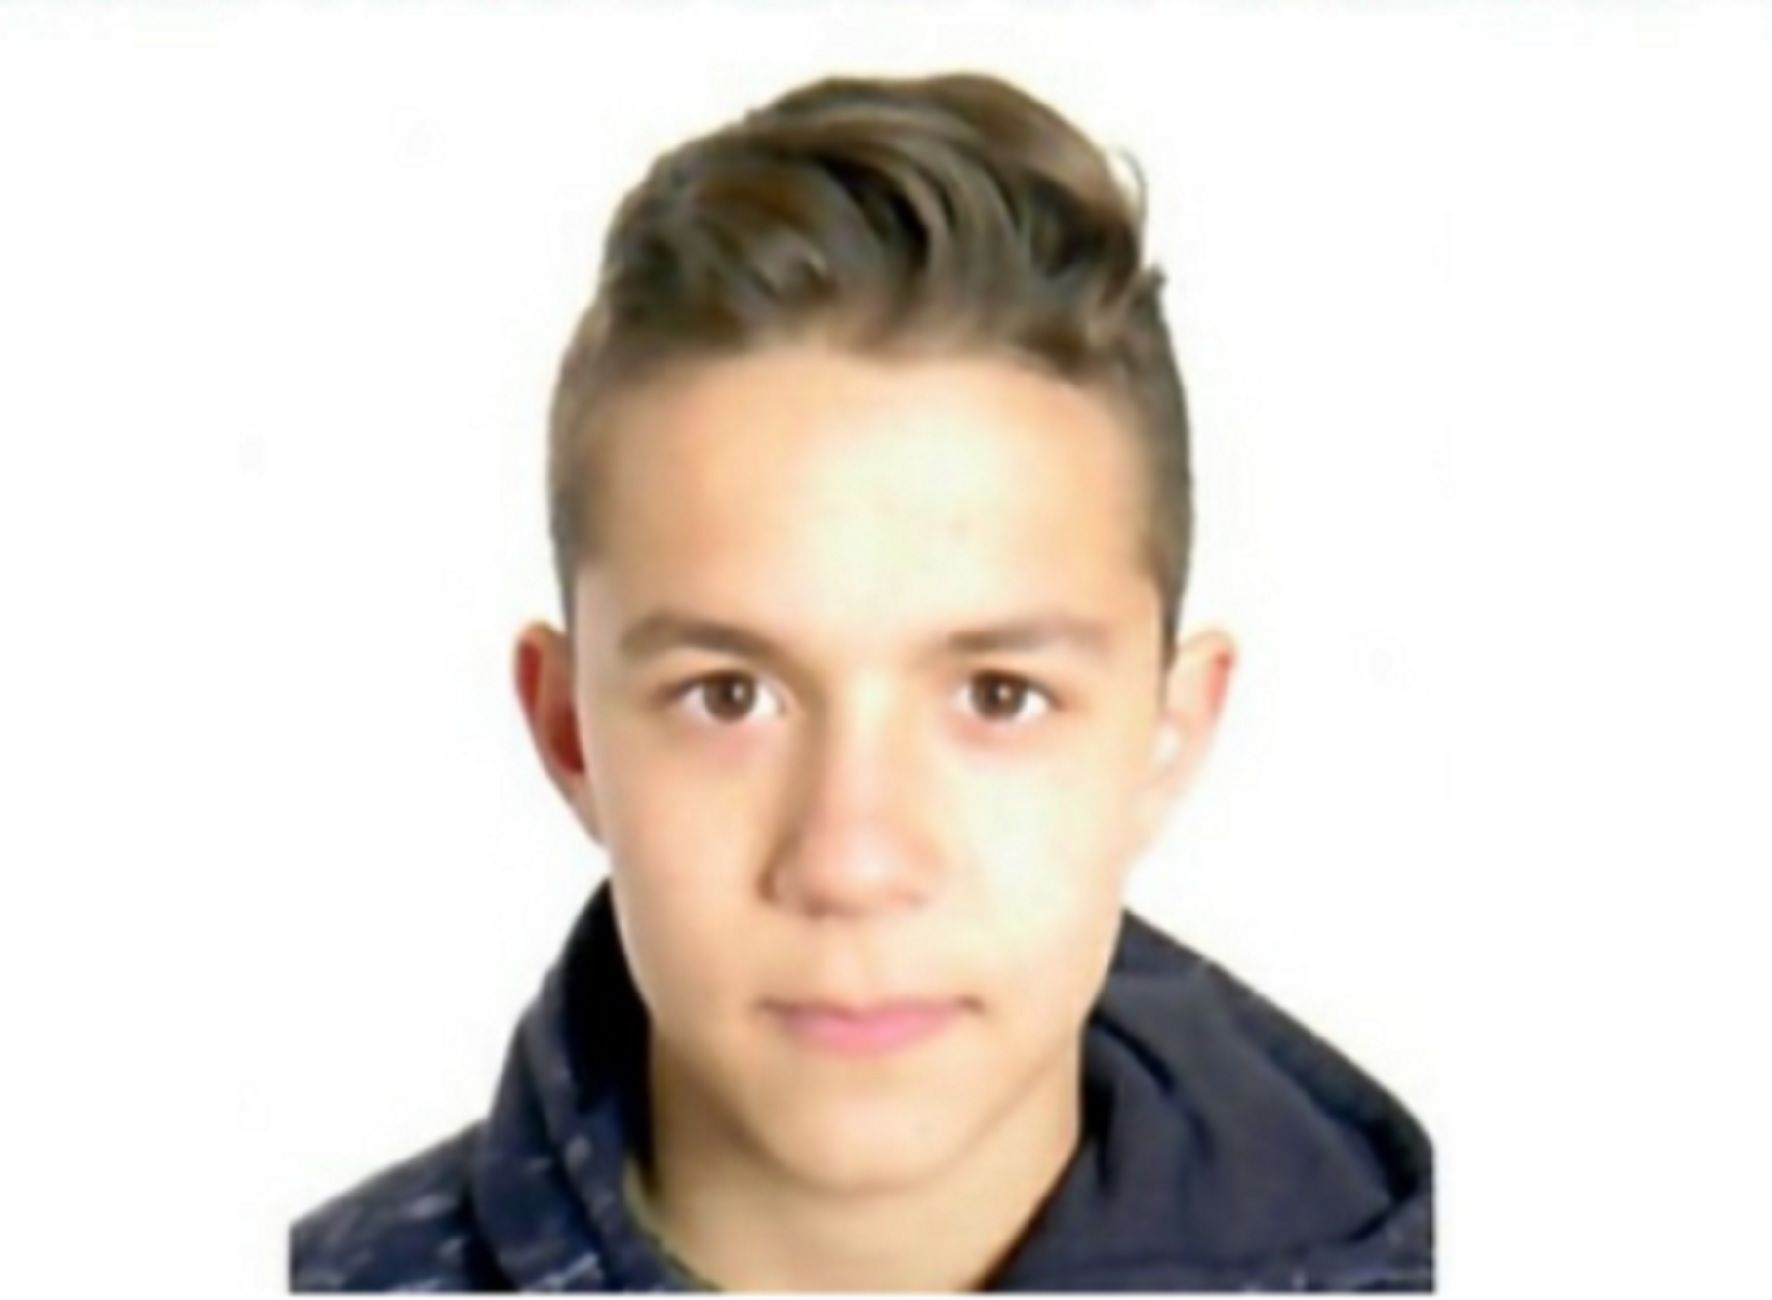 Desaparece Cristian Martínez González, un niño 13 años en Miguelturra (Ciudad Real) / SOS Desaparecidos